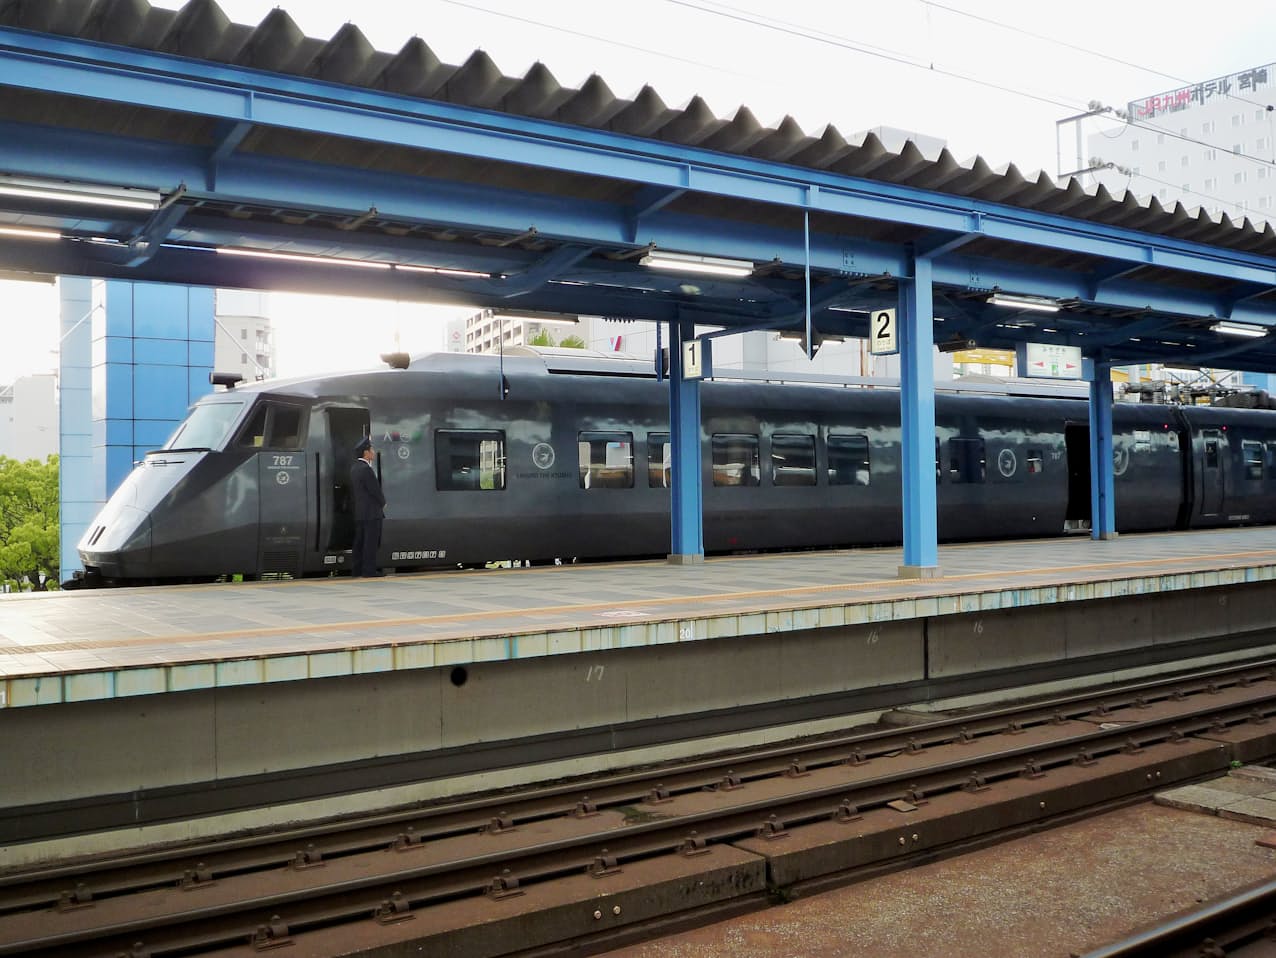 昼間に運転される旅客列車中、最も長い距離を走るのはJR九州の特急「にちりんシーガイア」だ。写真は宮崎駅で出発を待つ博多行きの「にちりんシーガイア24号」。2020年3月13日まで博多行きは「同20号」と2本運転されていたが、現在は「同14号」の1本に統合された。宮崎駅にて16年4月14日に筆者撮影